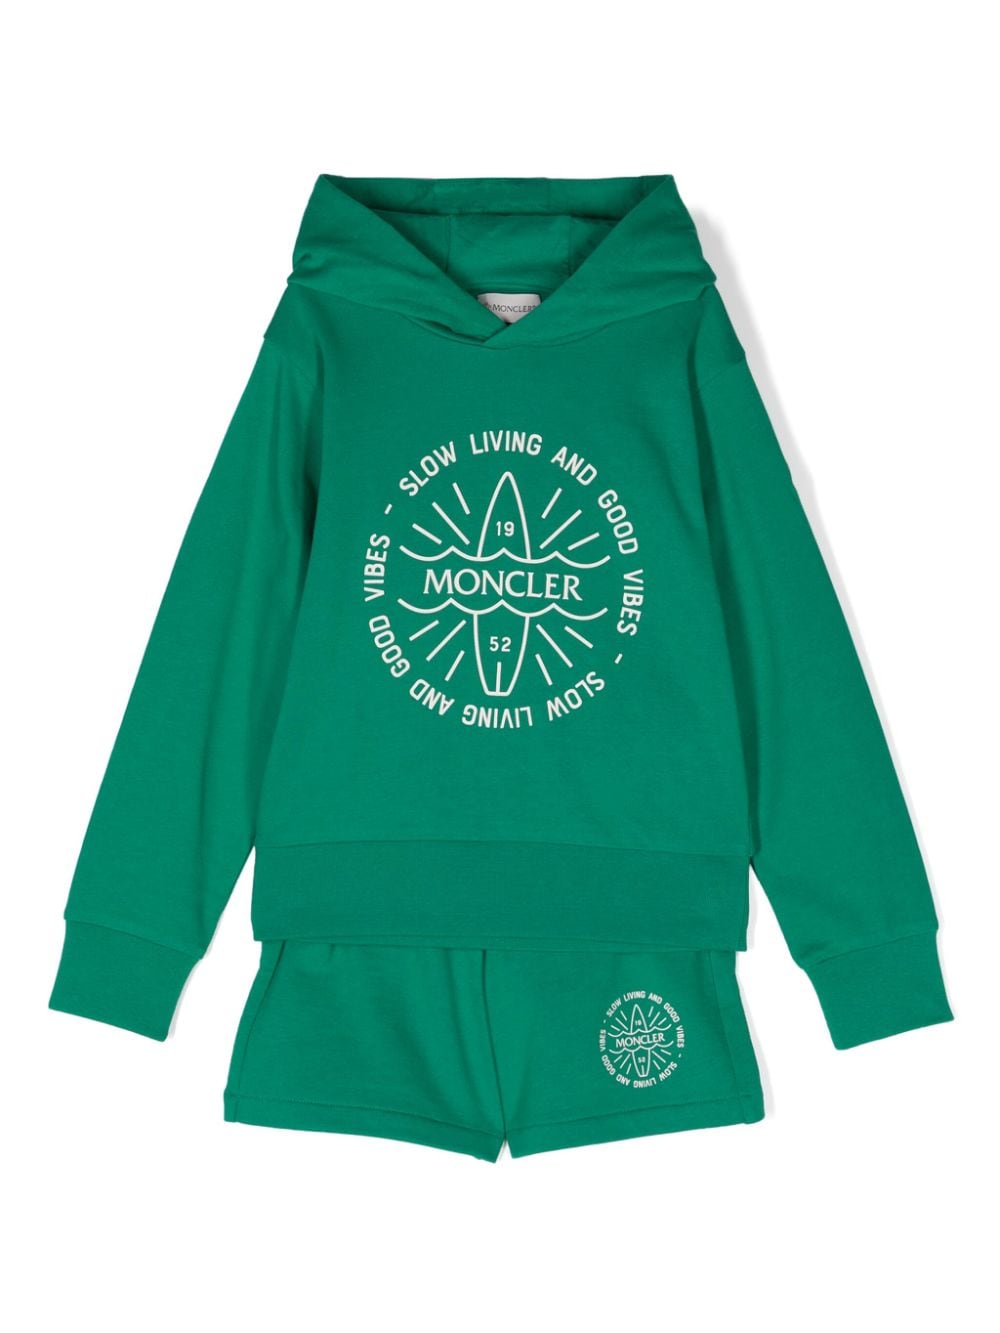 Moncler Enfant logo-appliqué track shorts set - Green von Moncler Enfant